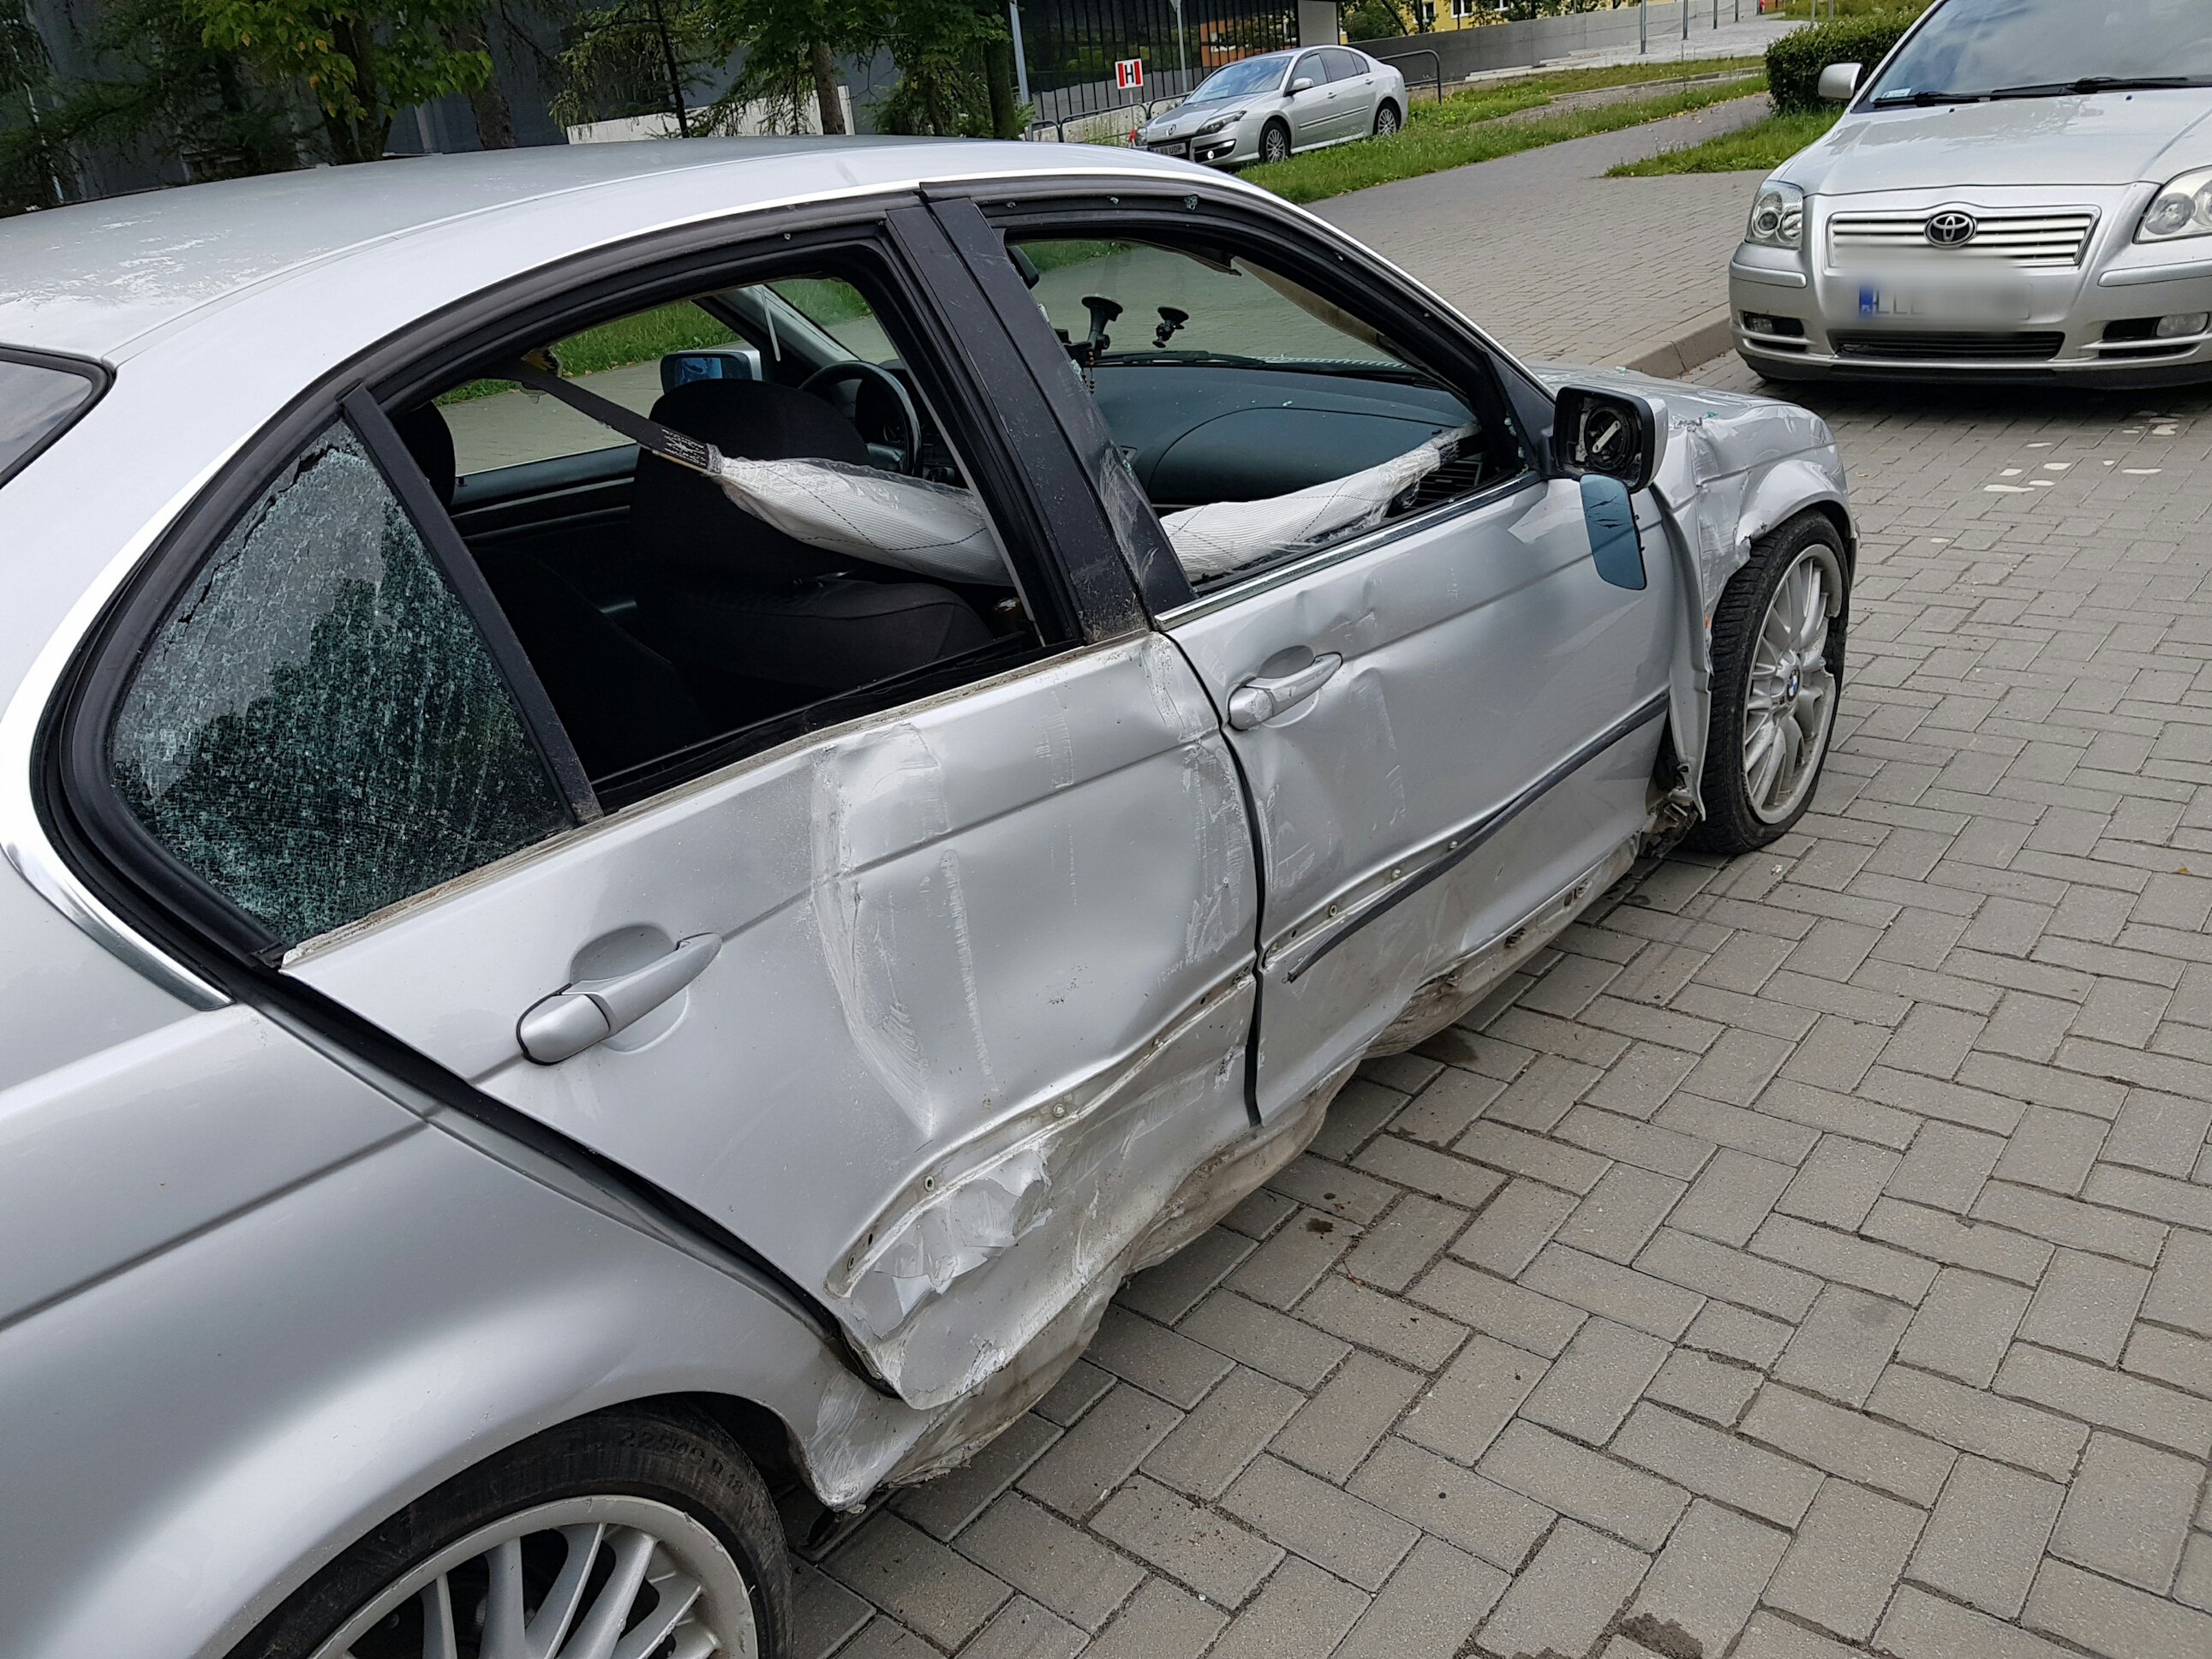 BMW staranowało barierki, kierowca porzucił auto i oddalił się (zdjęcia)